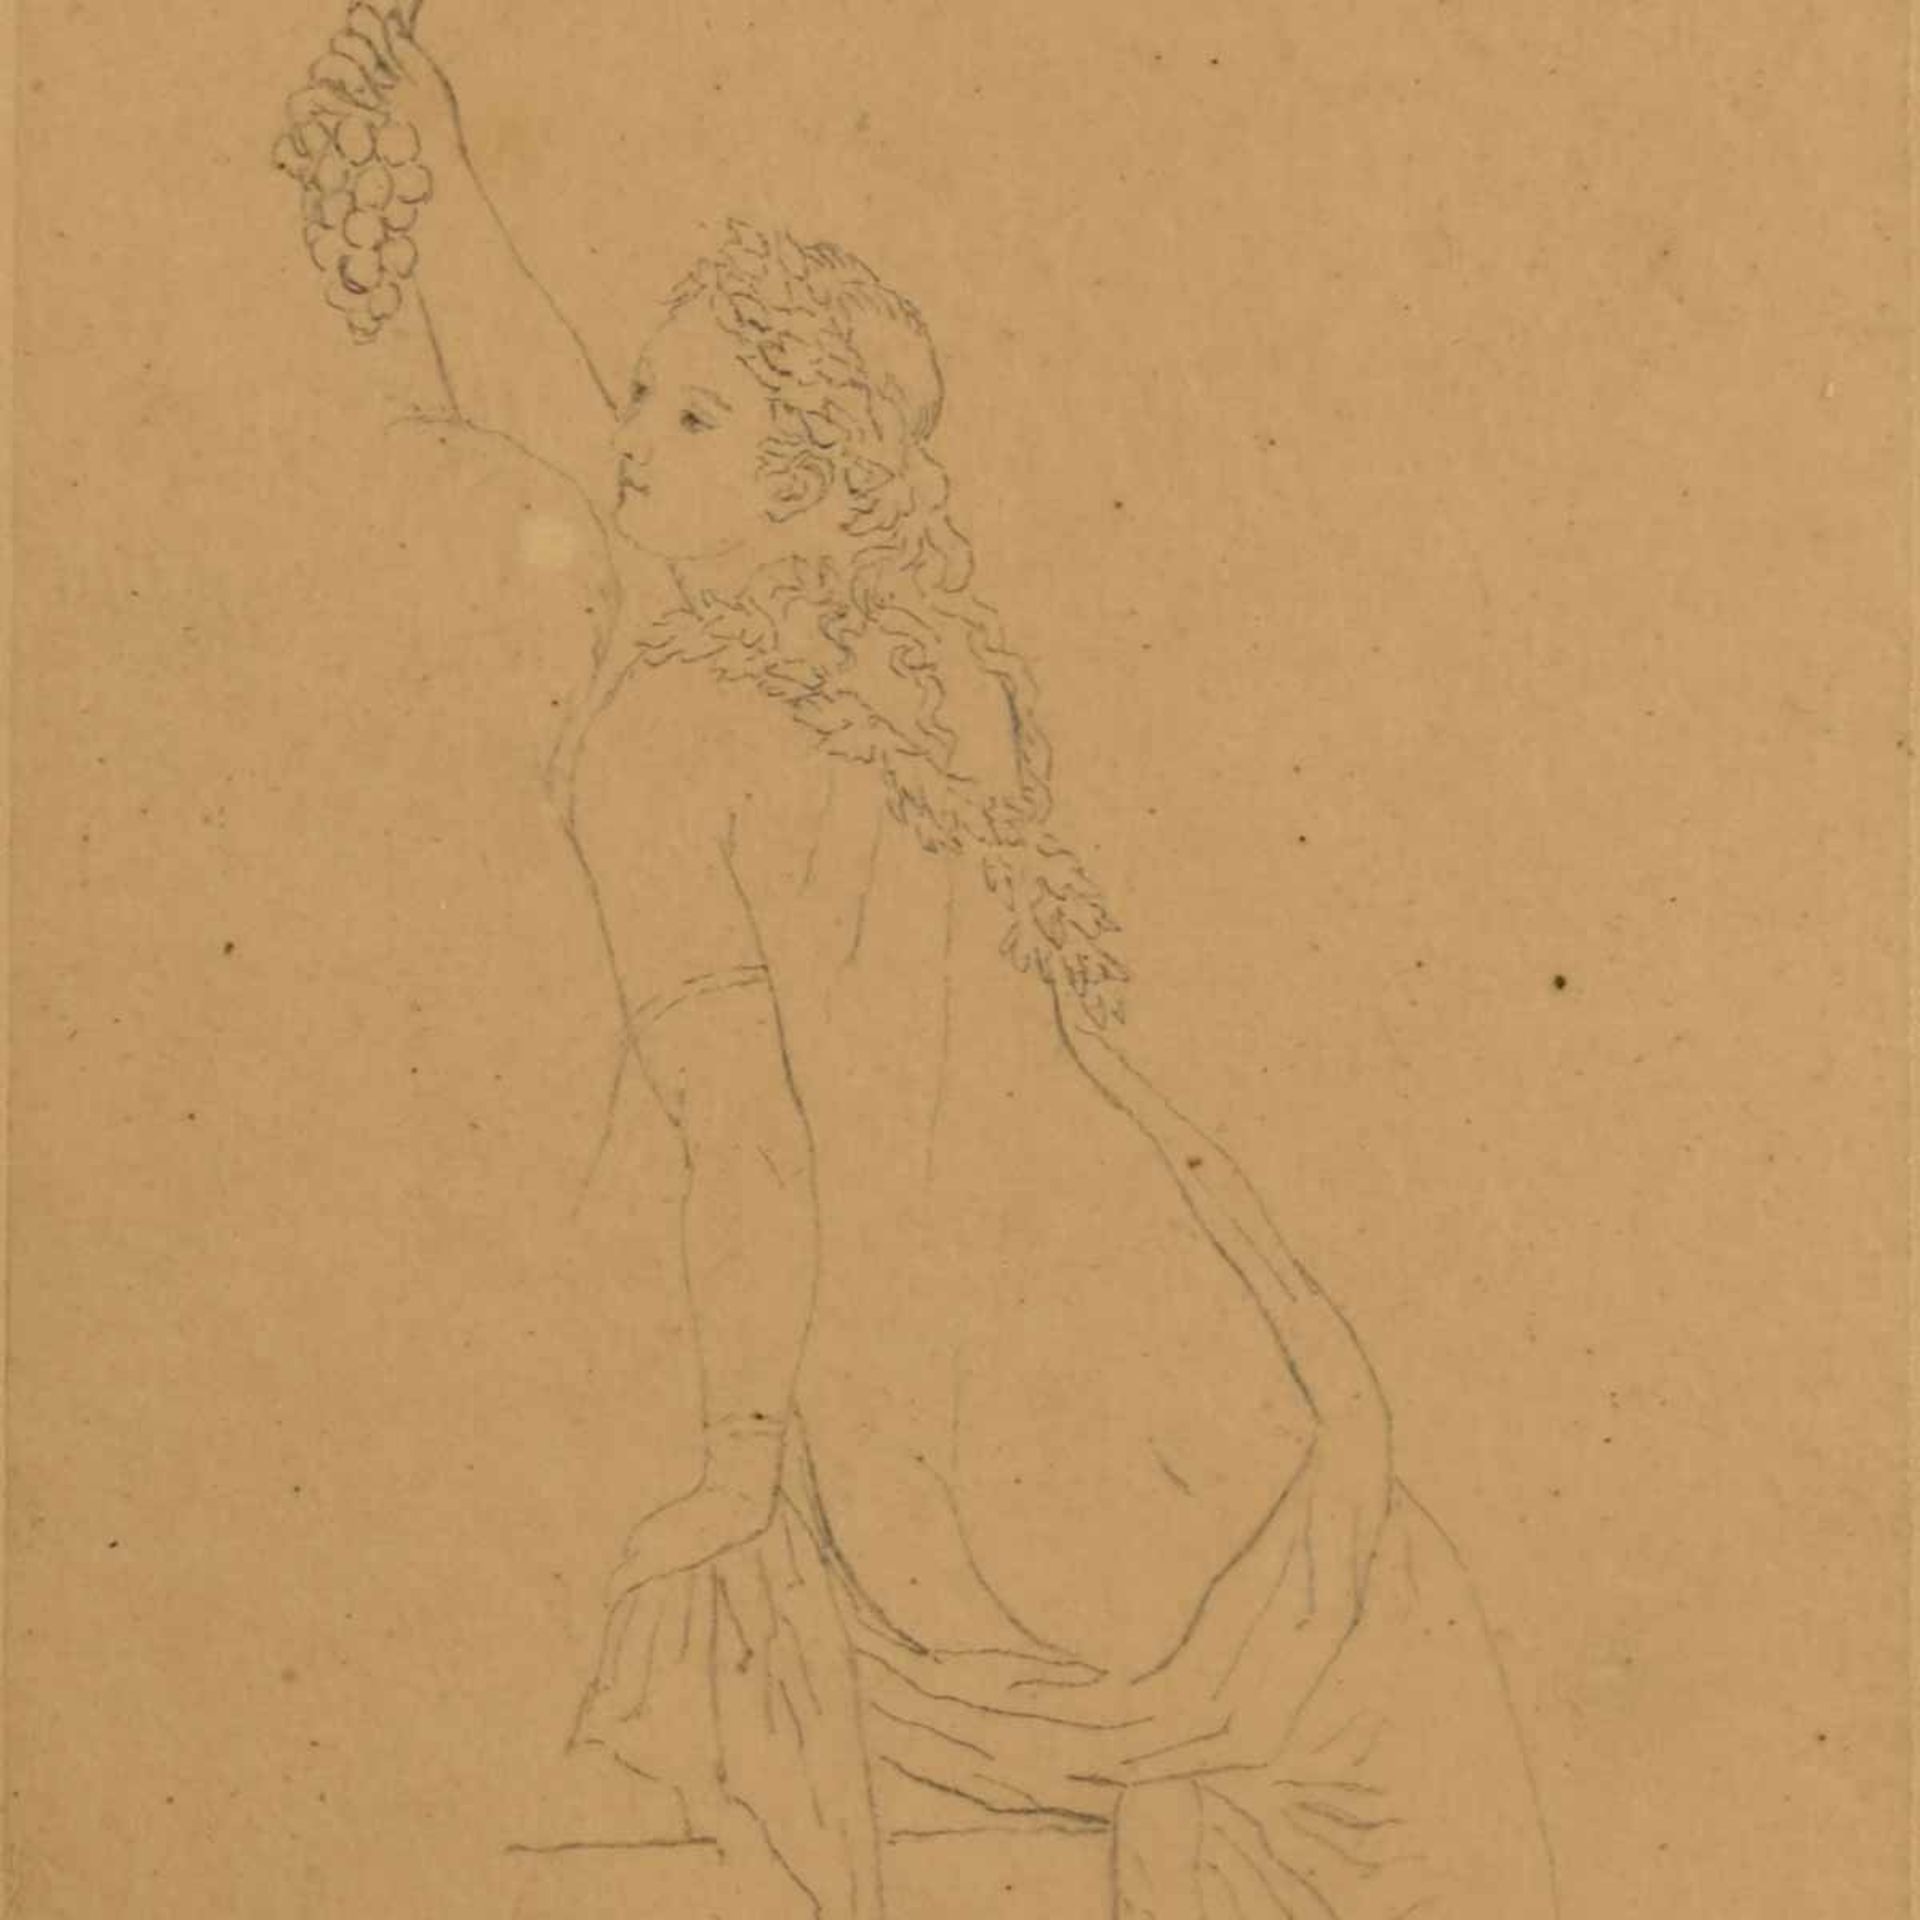 Unbekannter Zeichner des Klassizismus Blei auf feinem Transparentpapier, Bacchantin, Rückenansicht